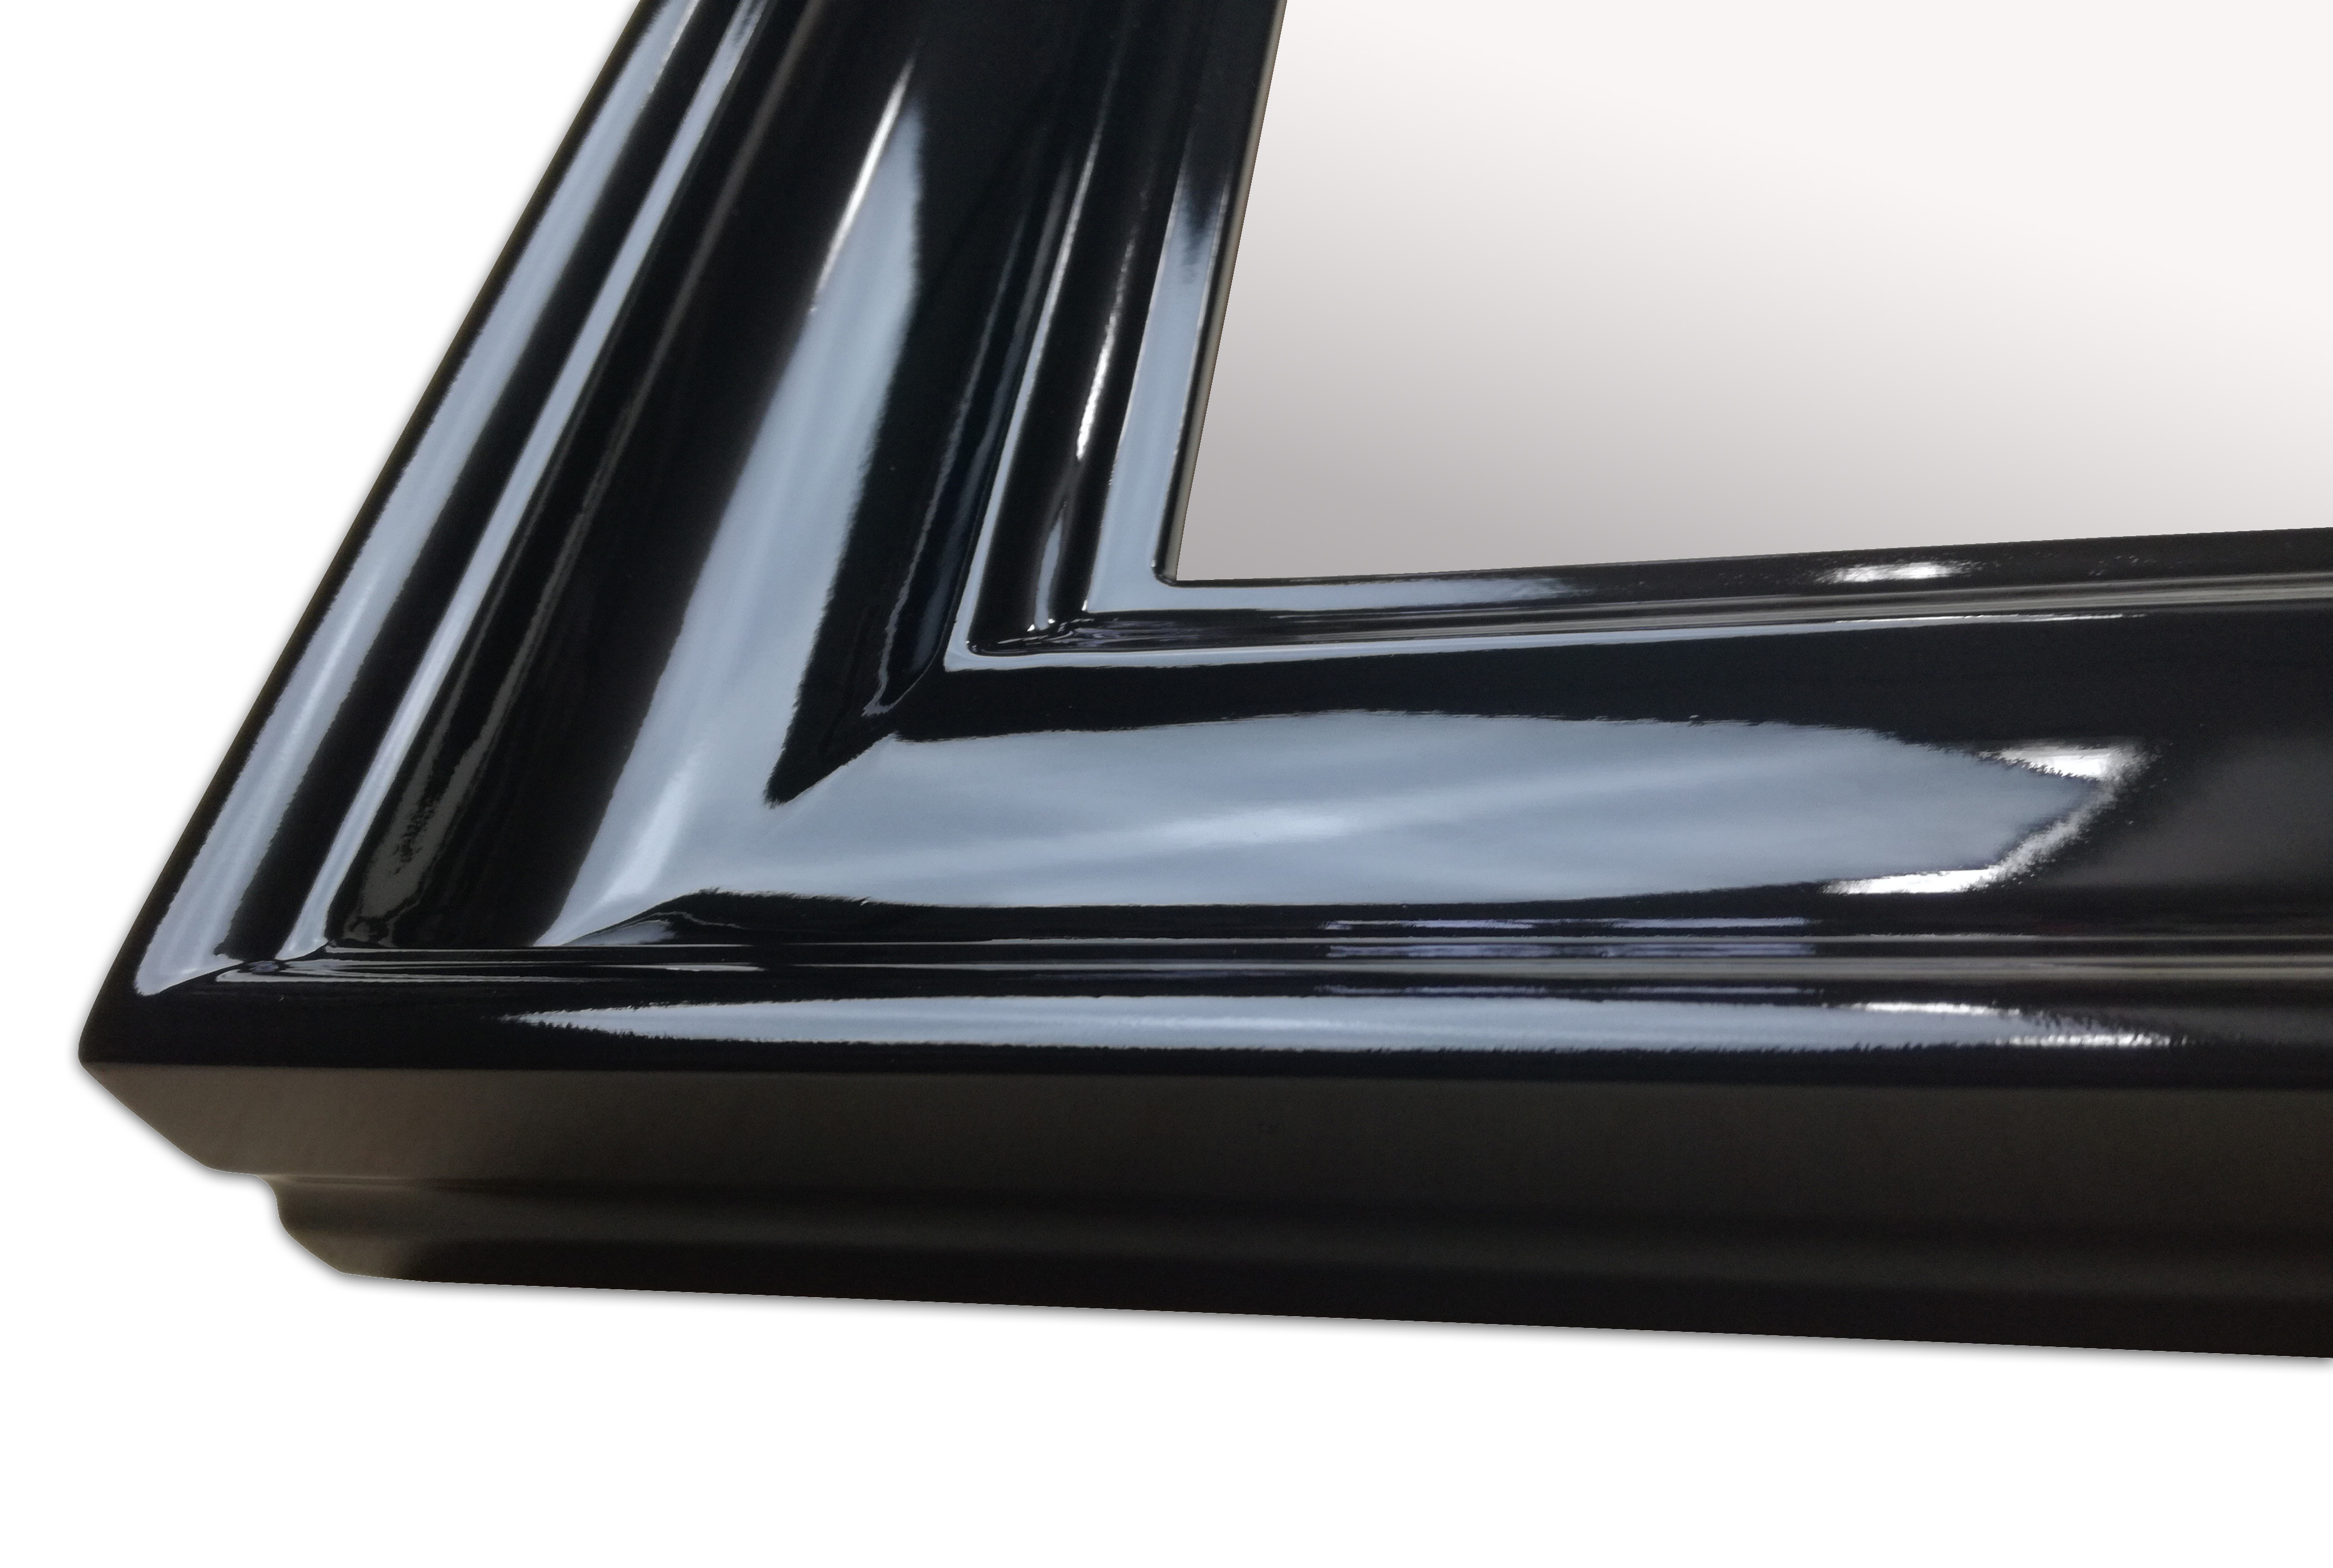 Mirror in a black high gloss frame